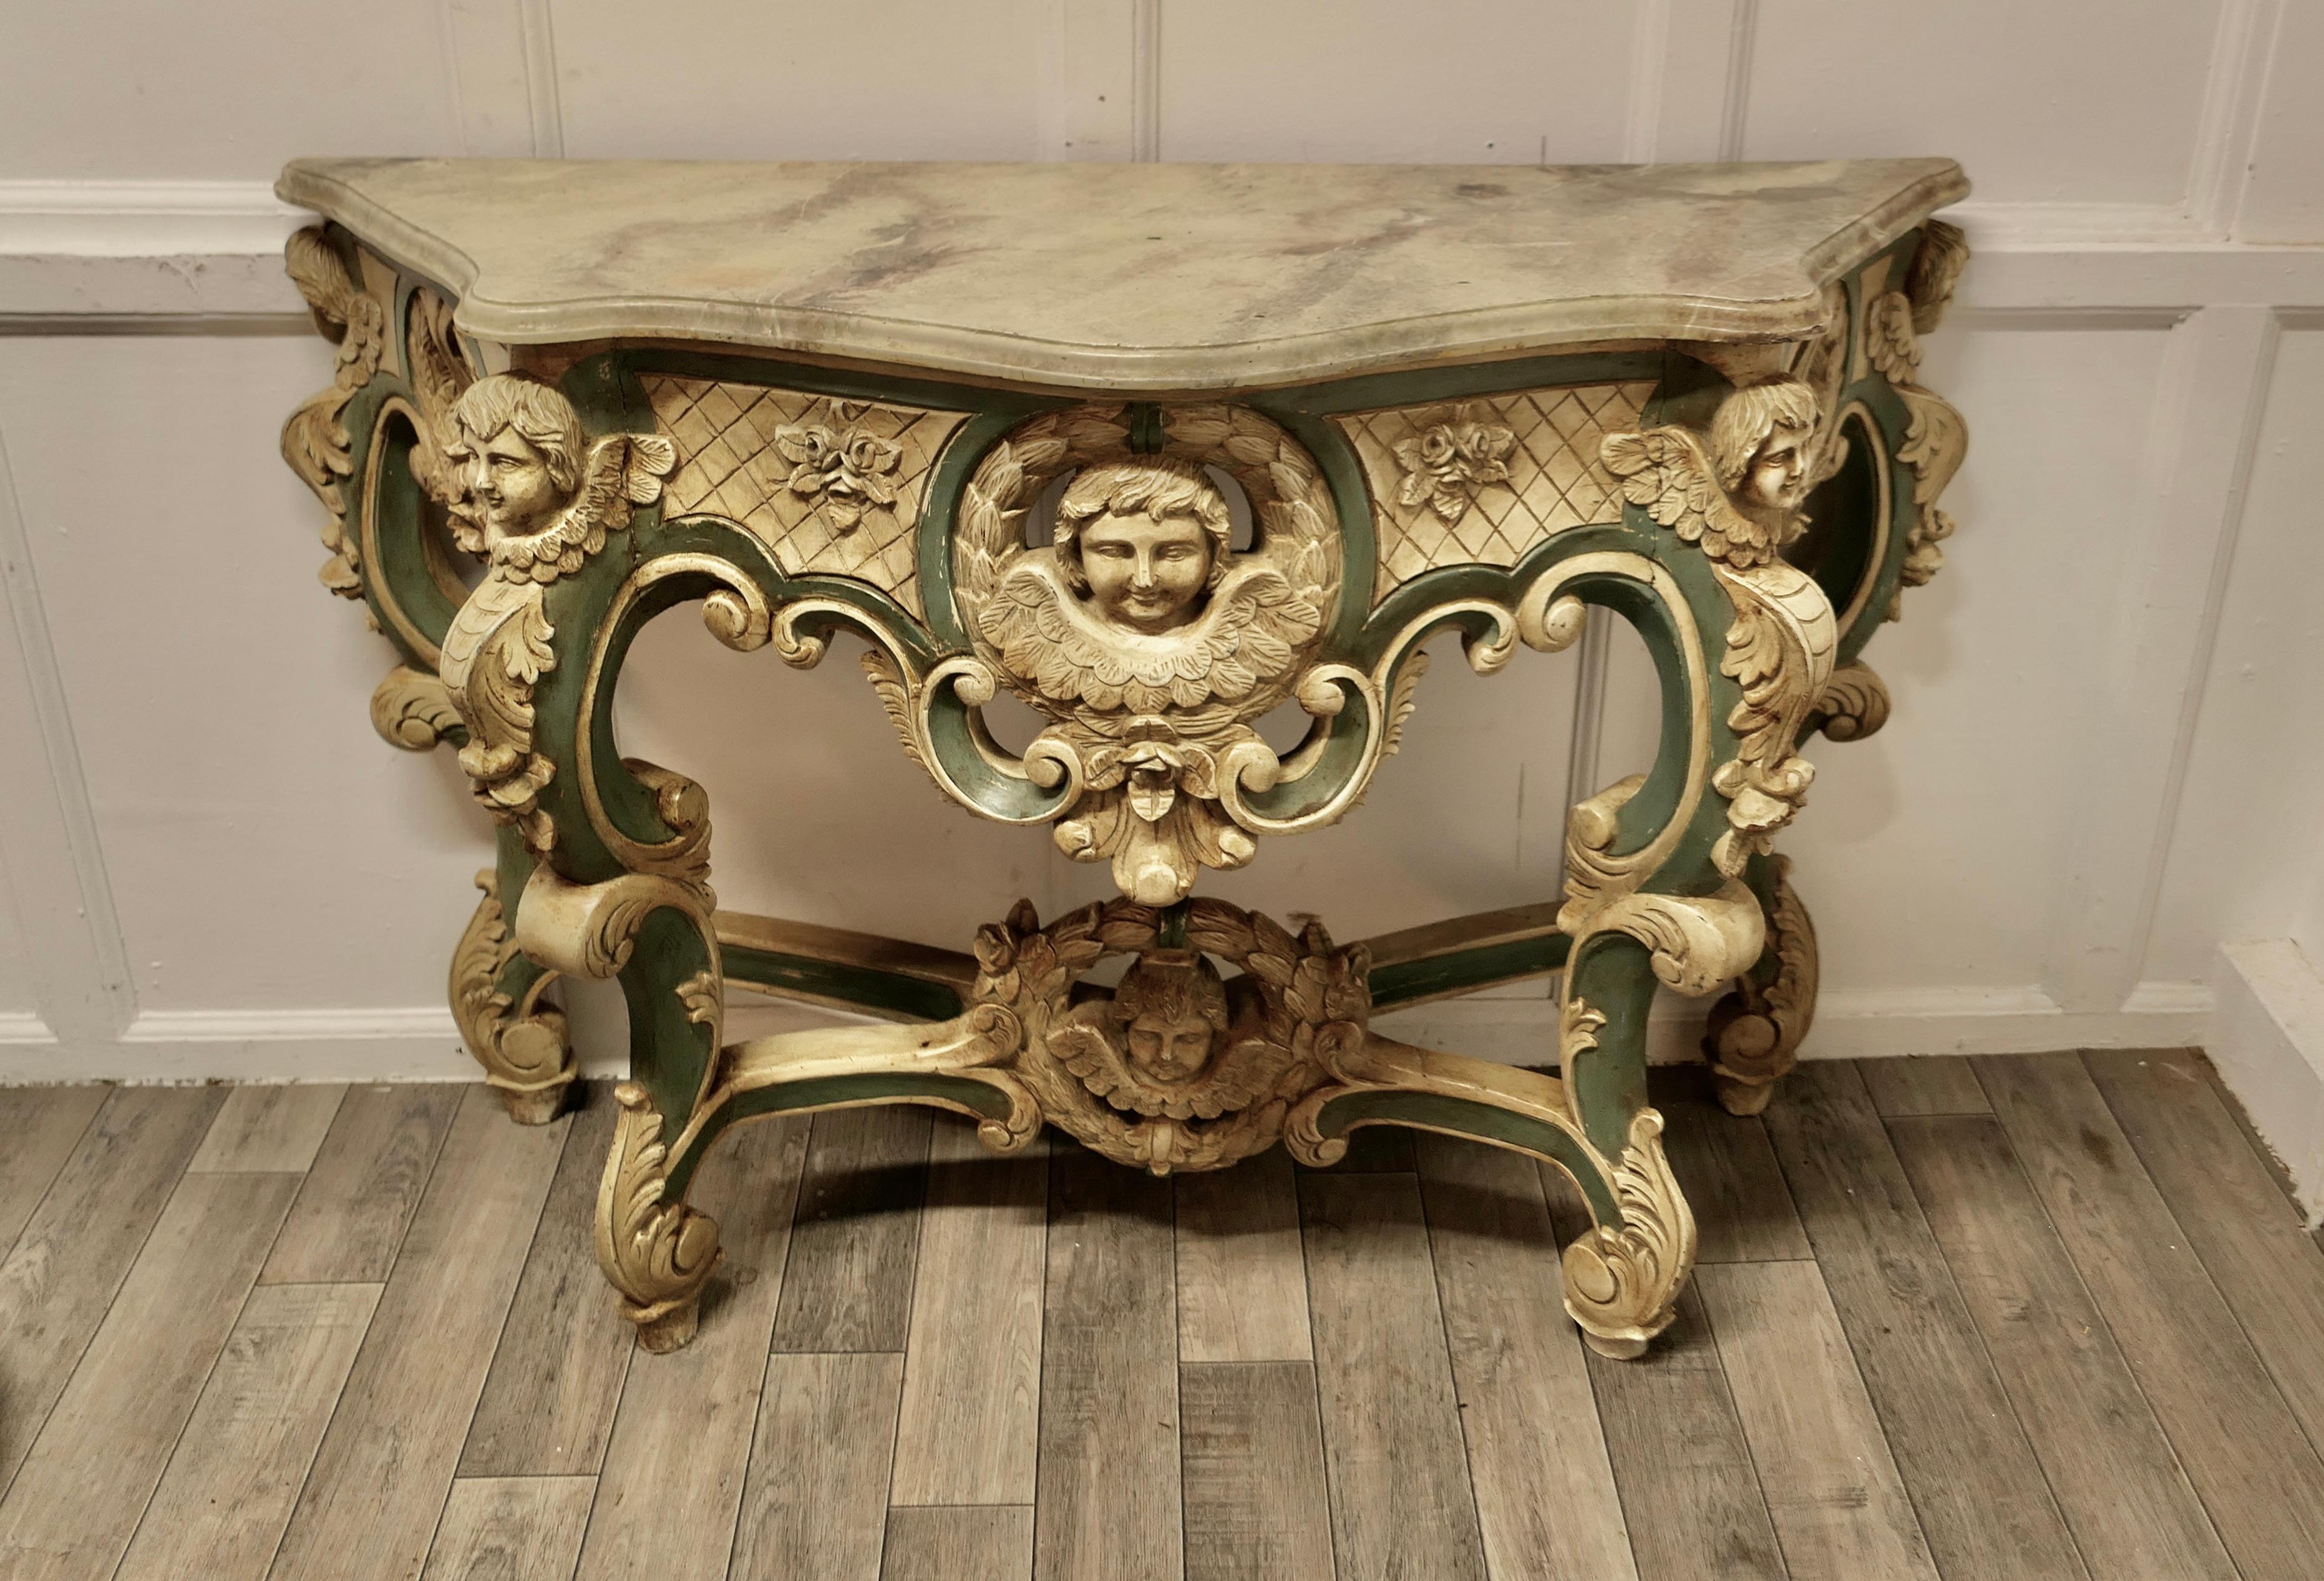  Table console baroque française, sculptée et peinte représentant les visages d'anges


Il s'agit d'une pièce très attrayante, la table est sculptée à la main avec un décor audacieux de figures, de rinceaux et de coquillages, elle a une forme